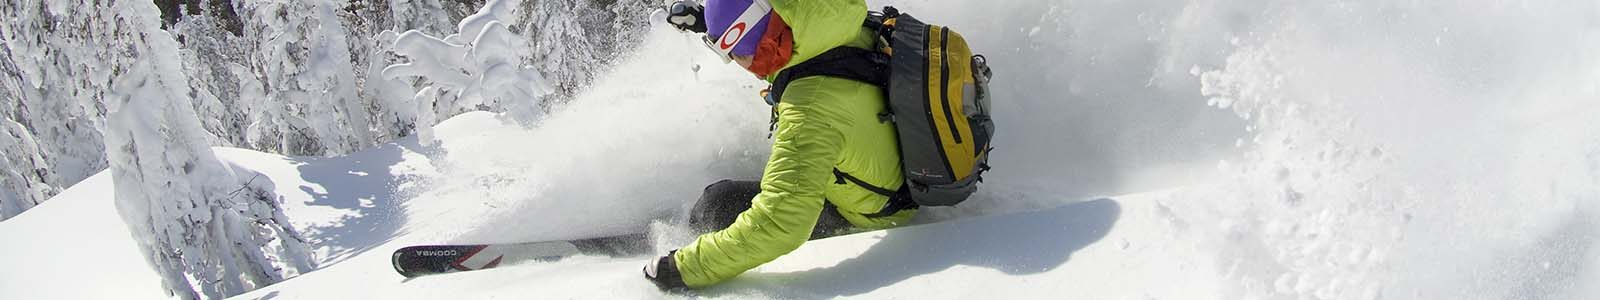 Skiën Lapland: wintersport voor de liefhebber